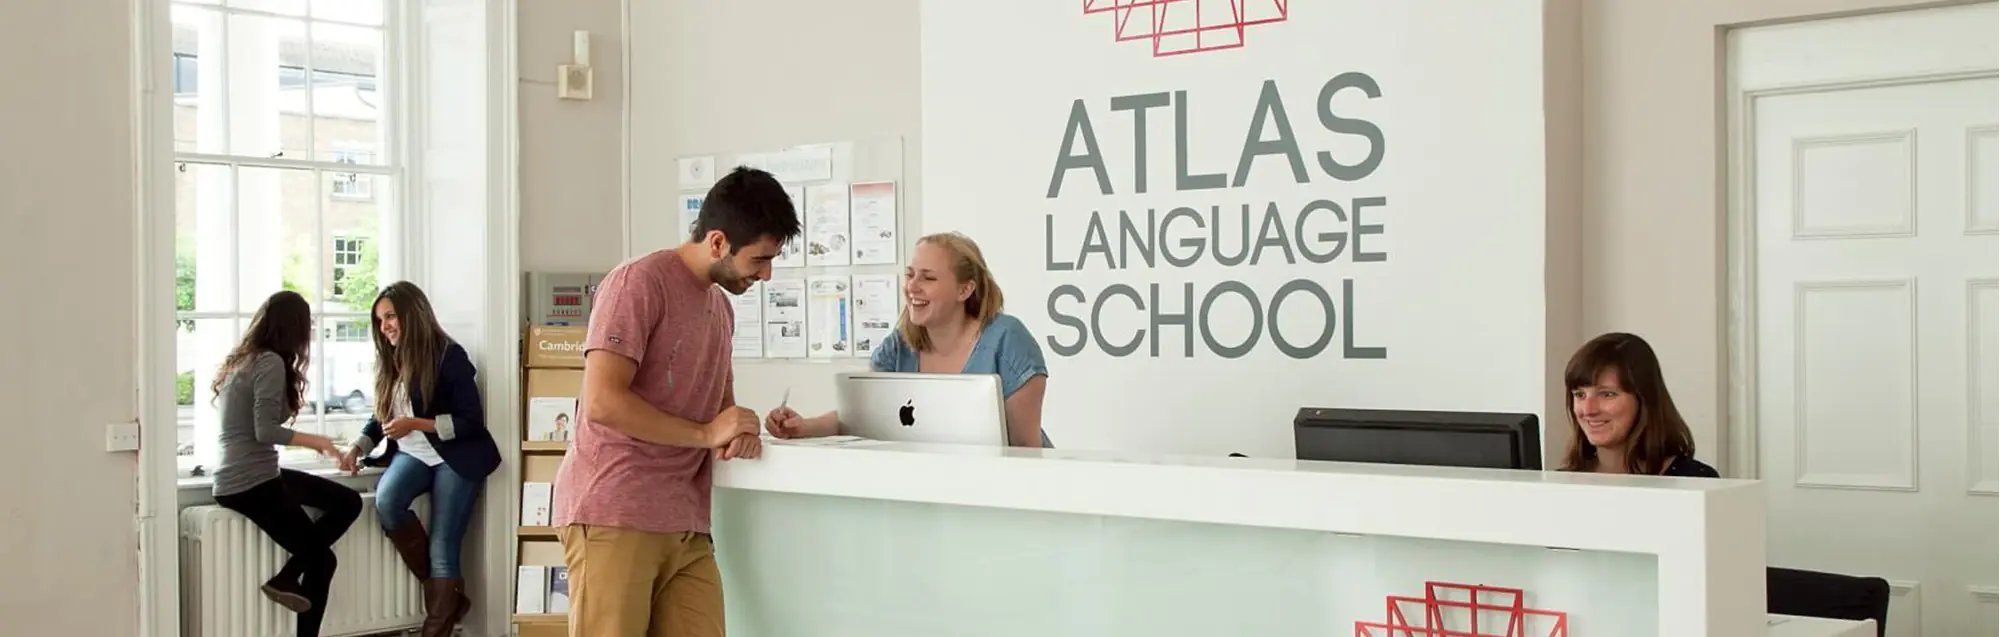 Cursos y precios de Atlas Language School